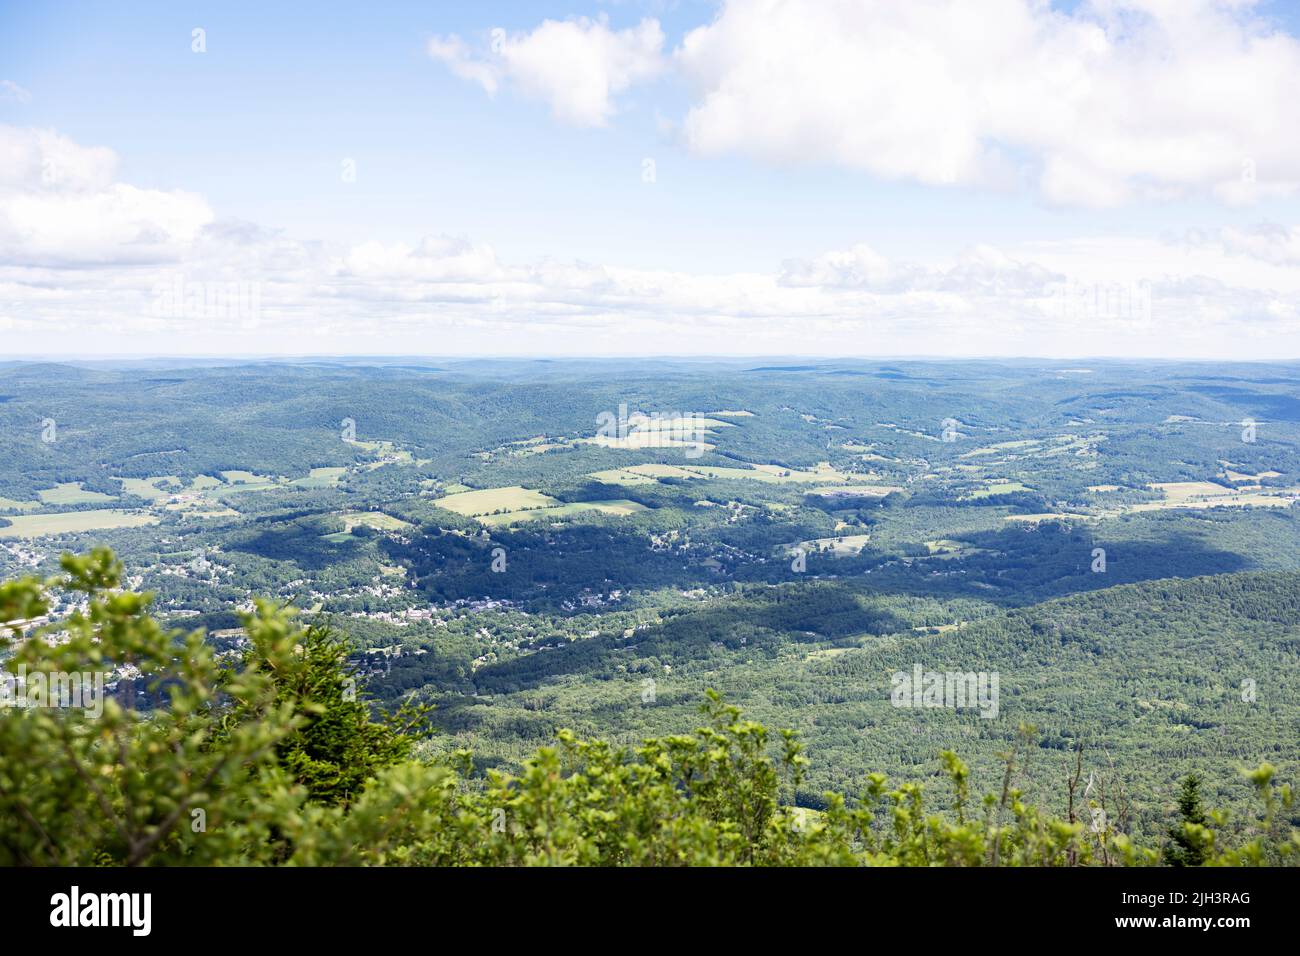 Vista de North Adams, Massachusetts, EE.UU., desde Mount Greylock, la montaña más alta del estado, en los Berkshires. Foto de stock